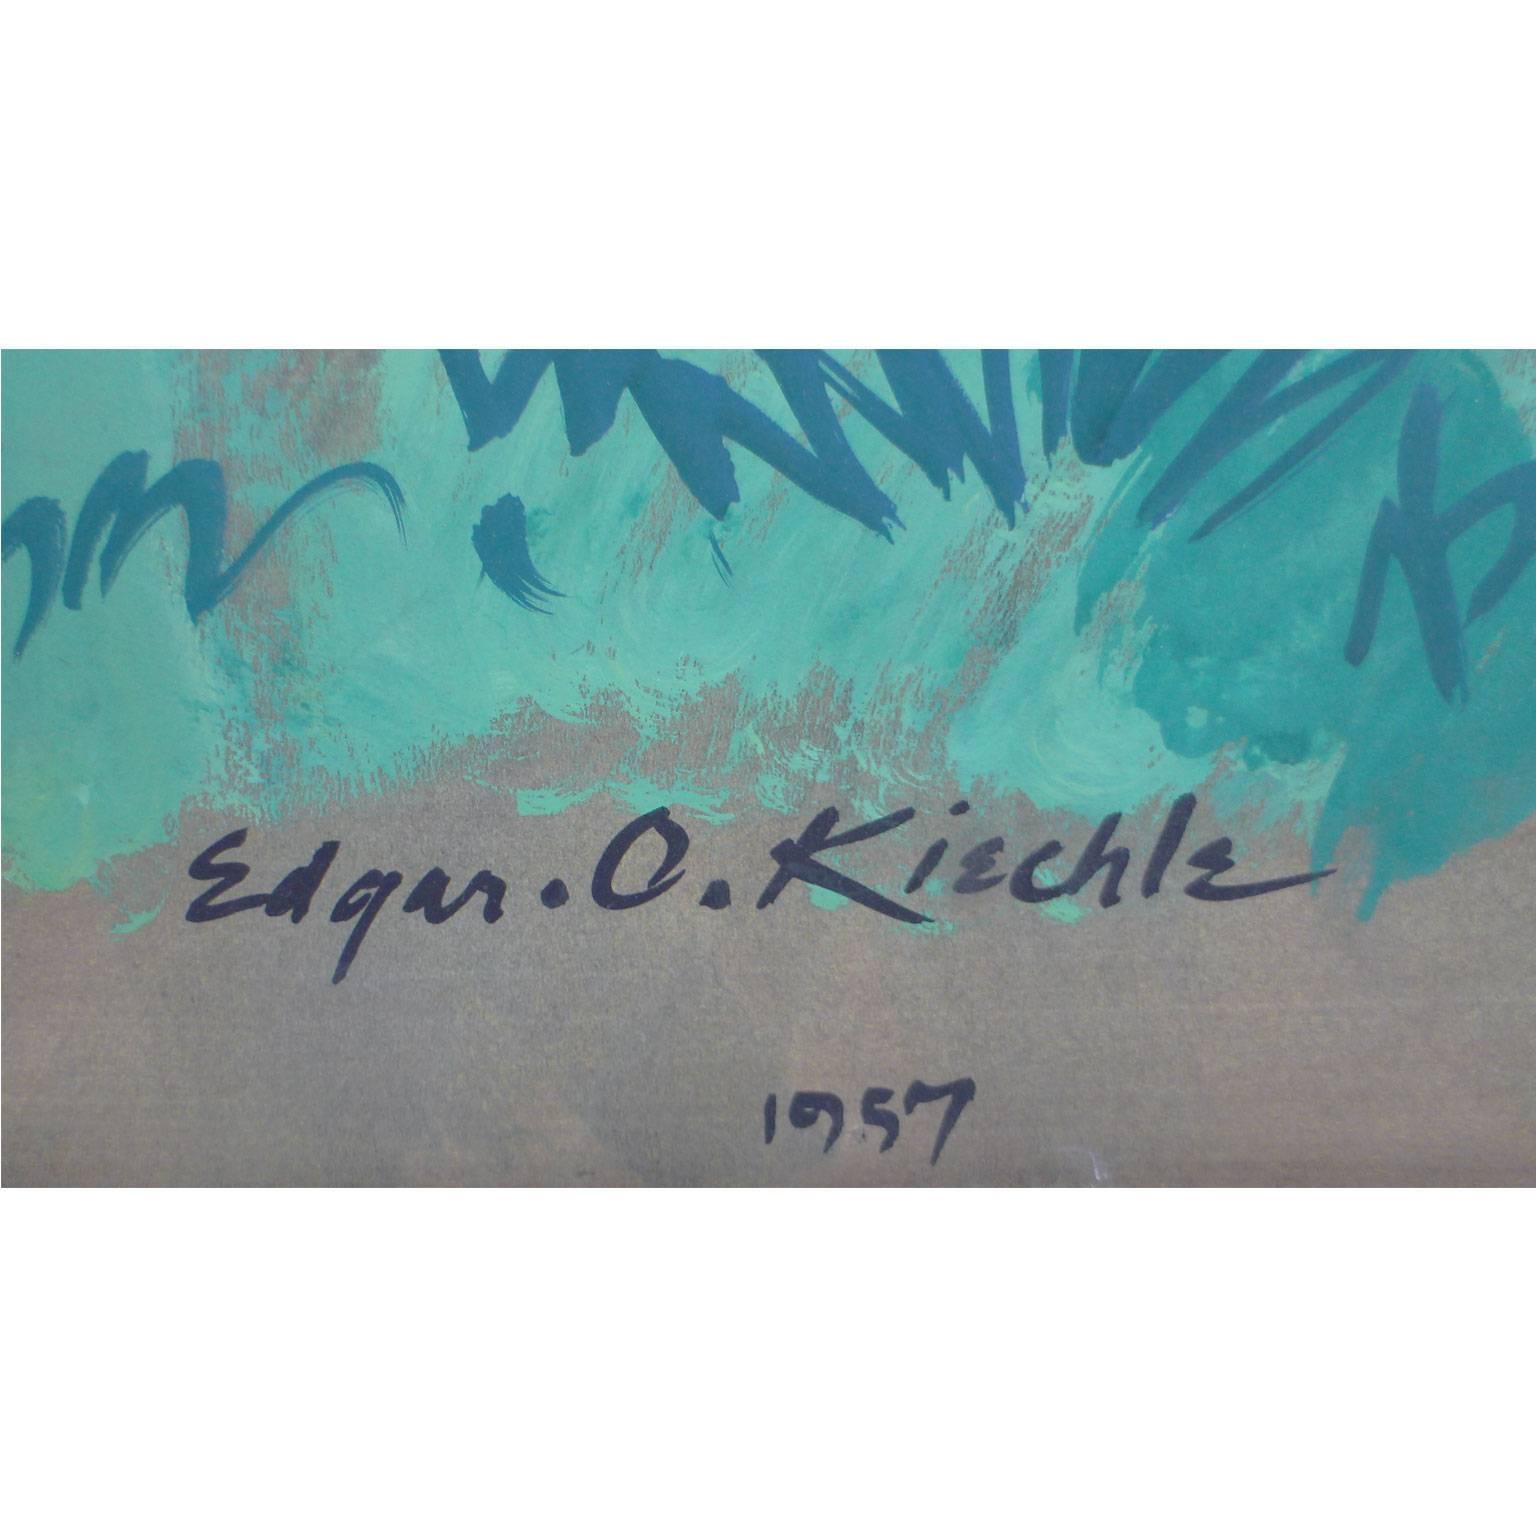 Edgar O. Kiechle, #340, 